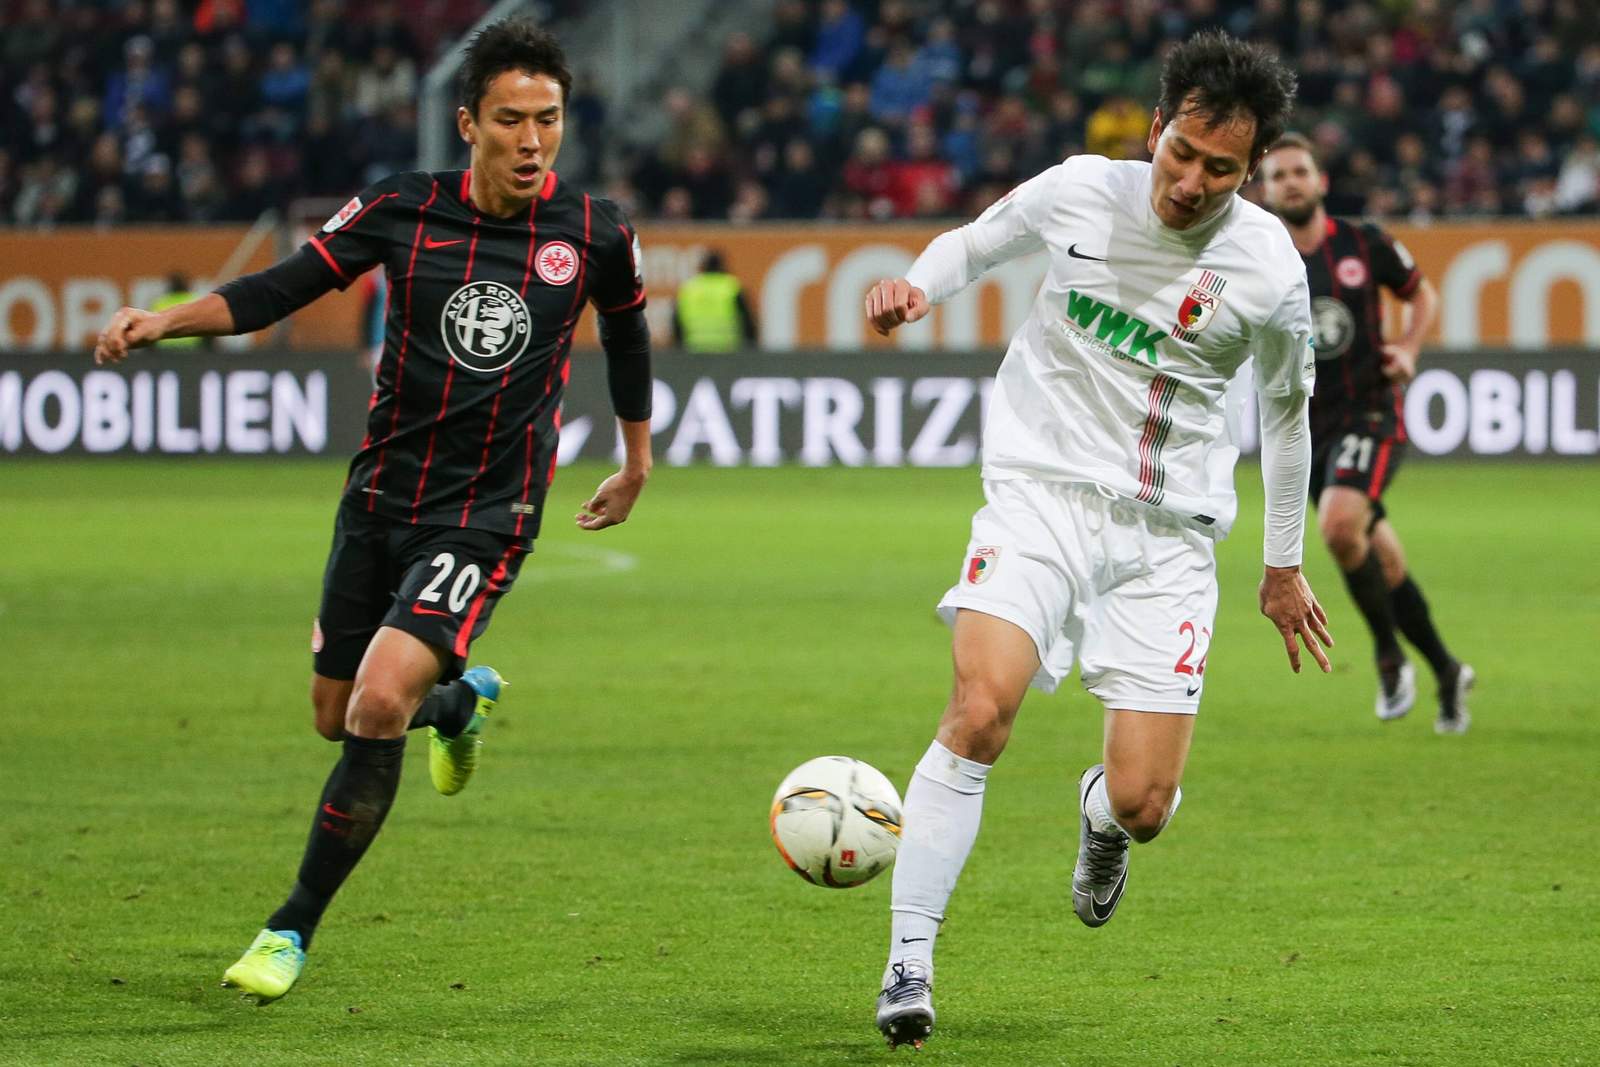 Kann Makoto Hasebe mit der Eintracht gegen den FCA seine Serie ausbauen? Jetzt auf Frankfurt gegen Augsburg wetten!